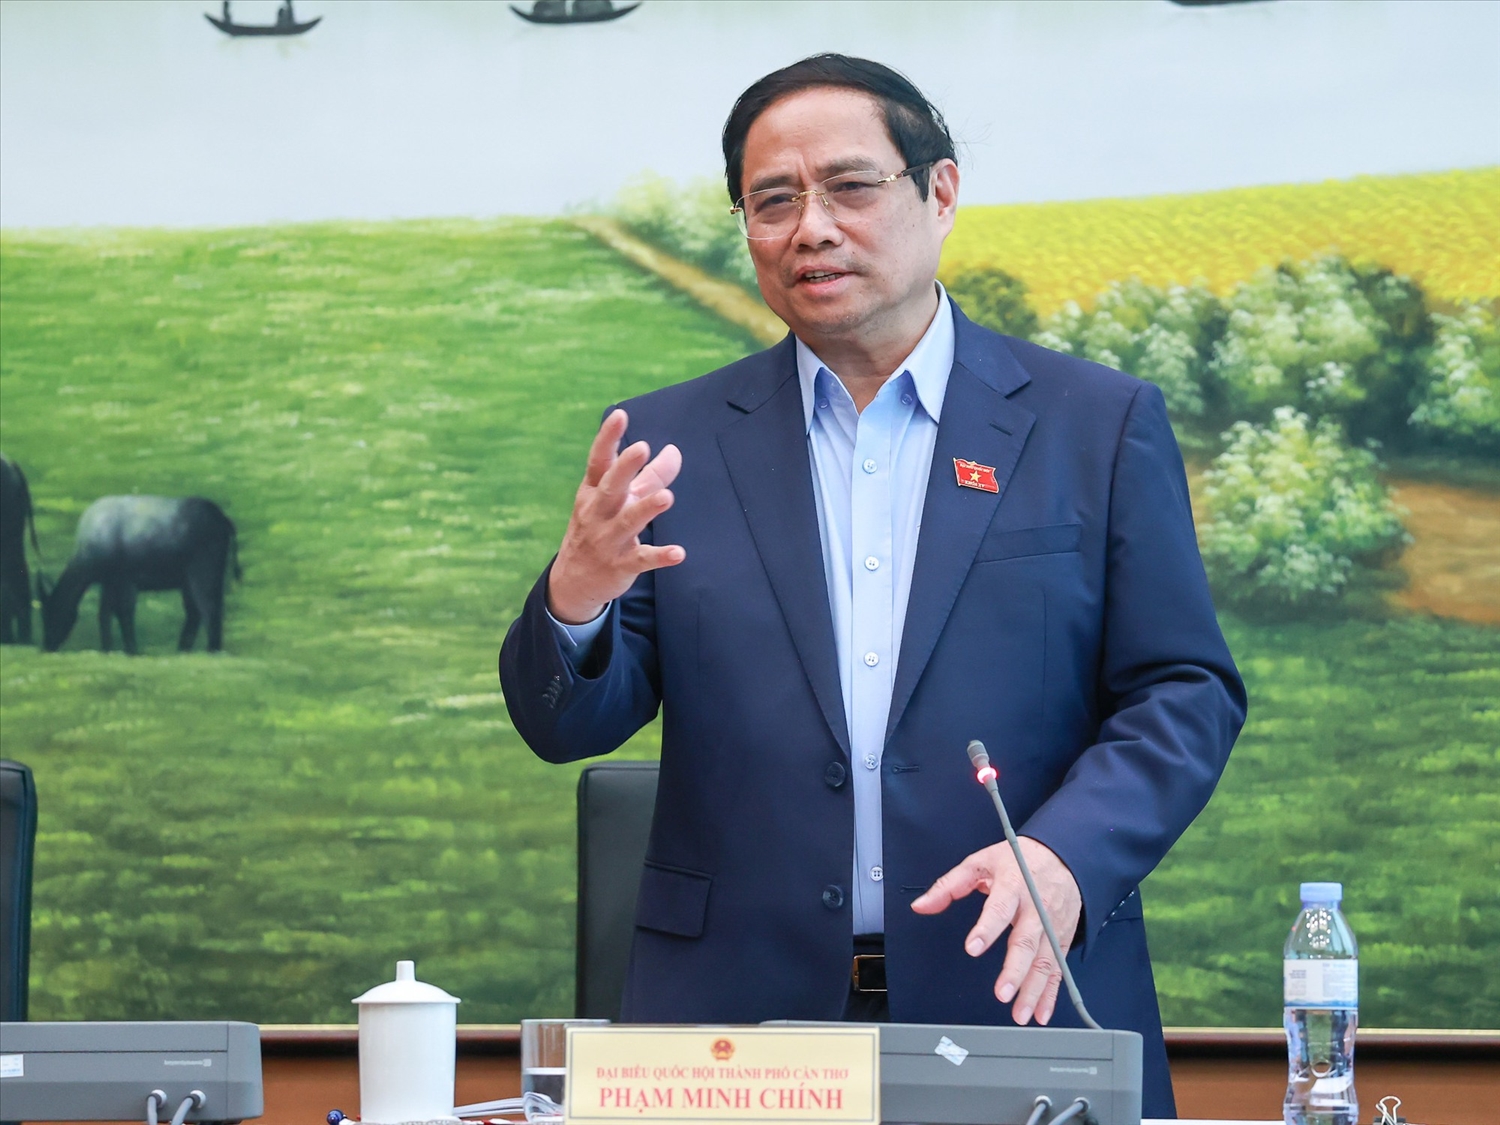 Thủ tướng Phạm Minh Chính nhấn mạnh, dự án Luật Đất đai là đạo luật rất quan trọng, nên các đại biểu cần rà soát xem luật bám sát chủ trương đường lối của Đảng và góp phần tháo gỡ vướng mắc từ thực tiễn - Ảnh: VGP